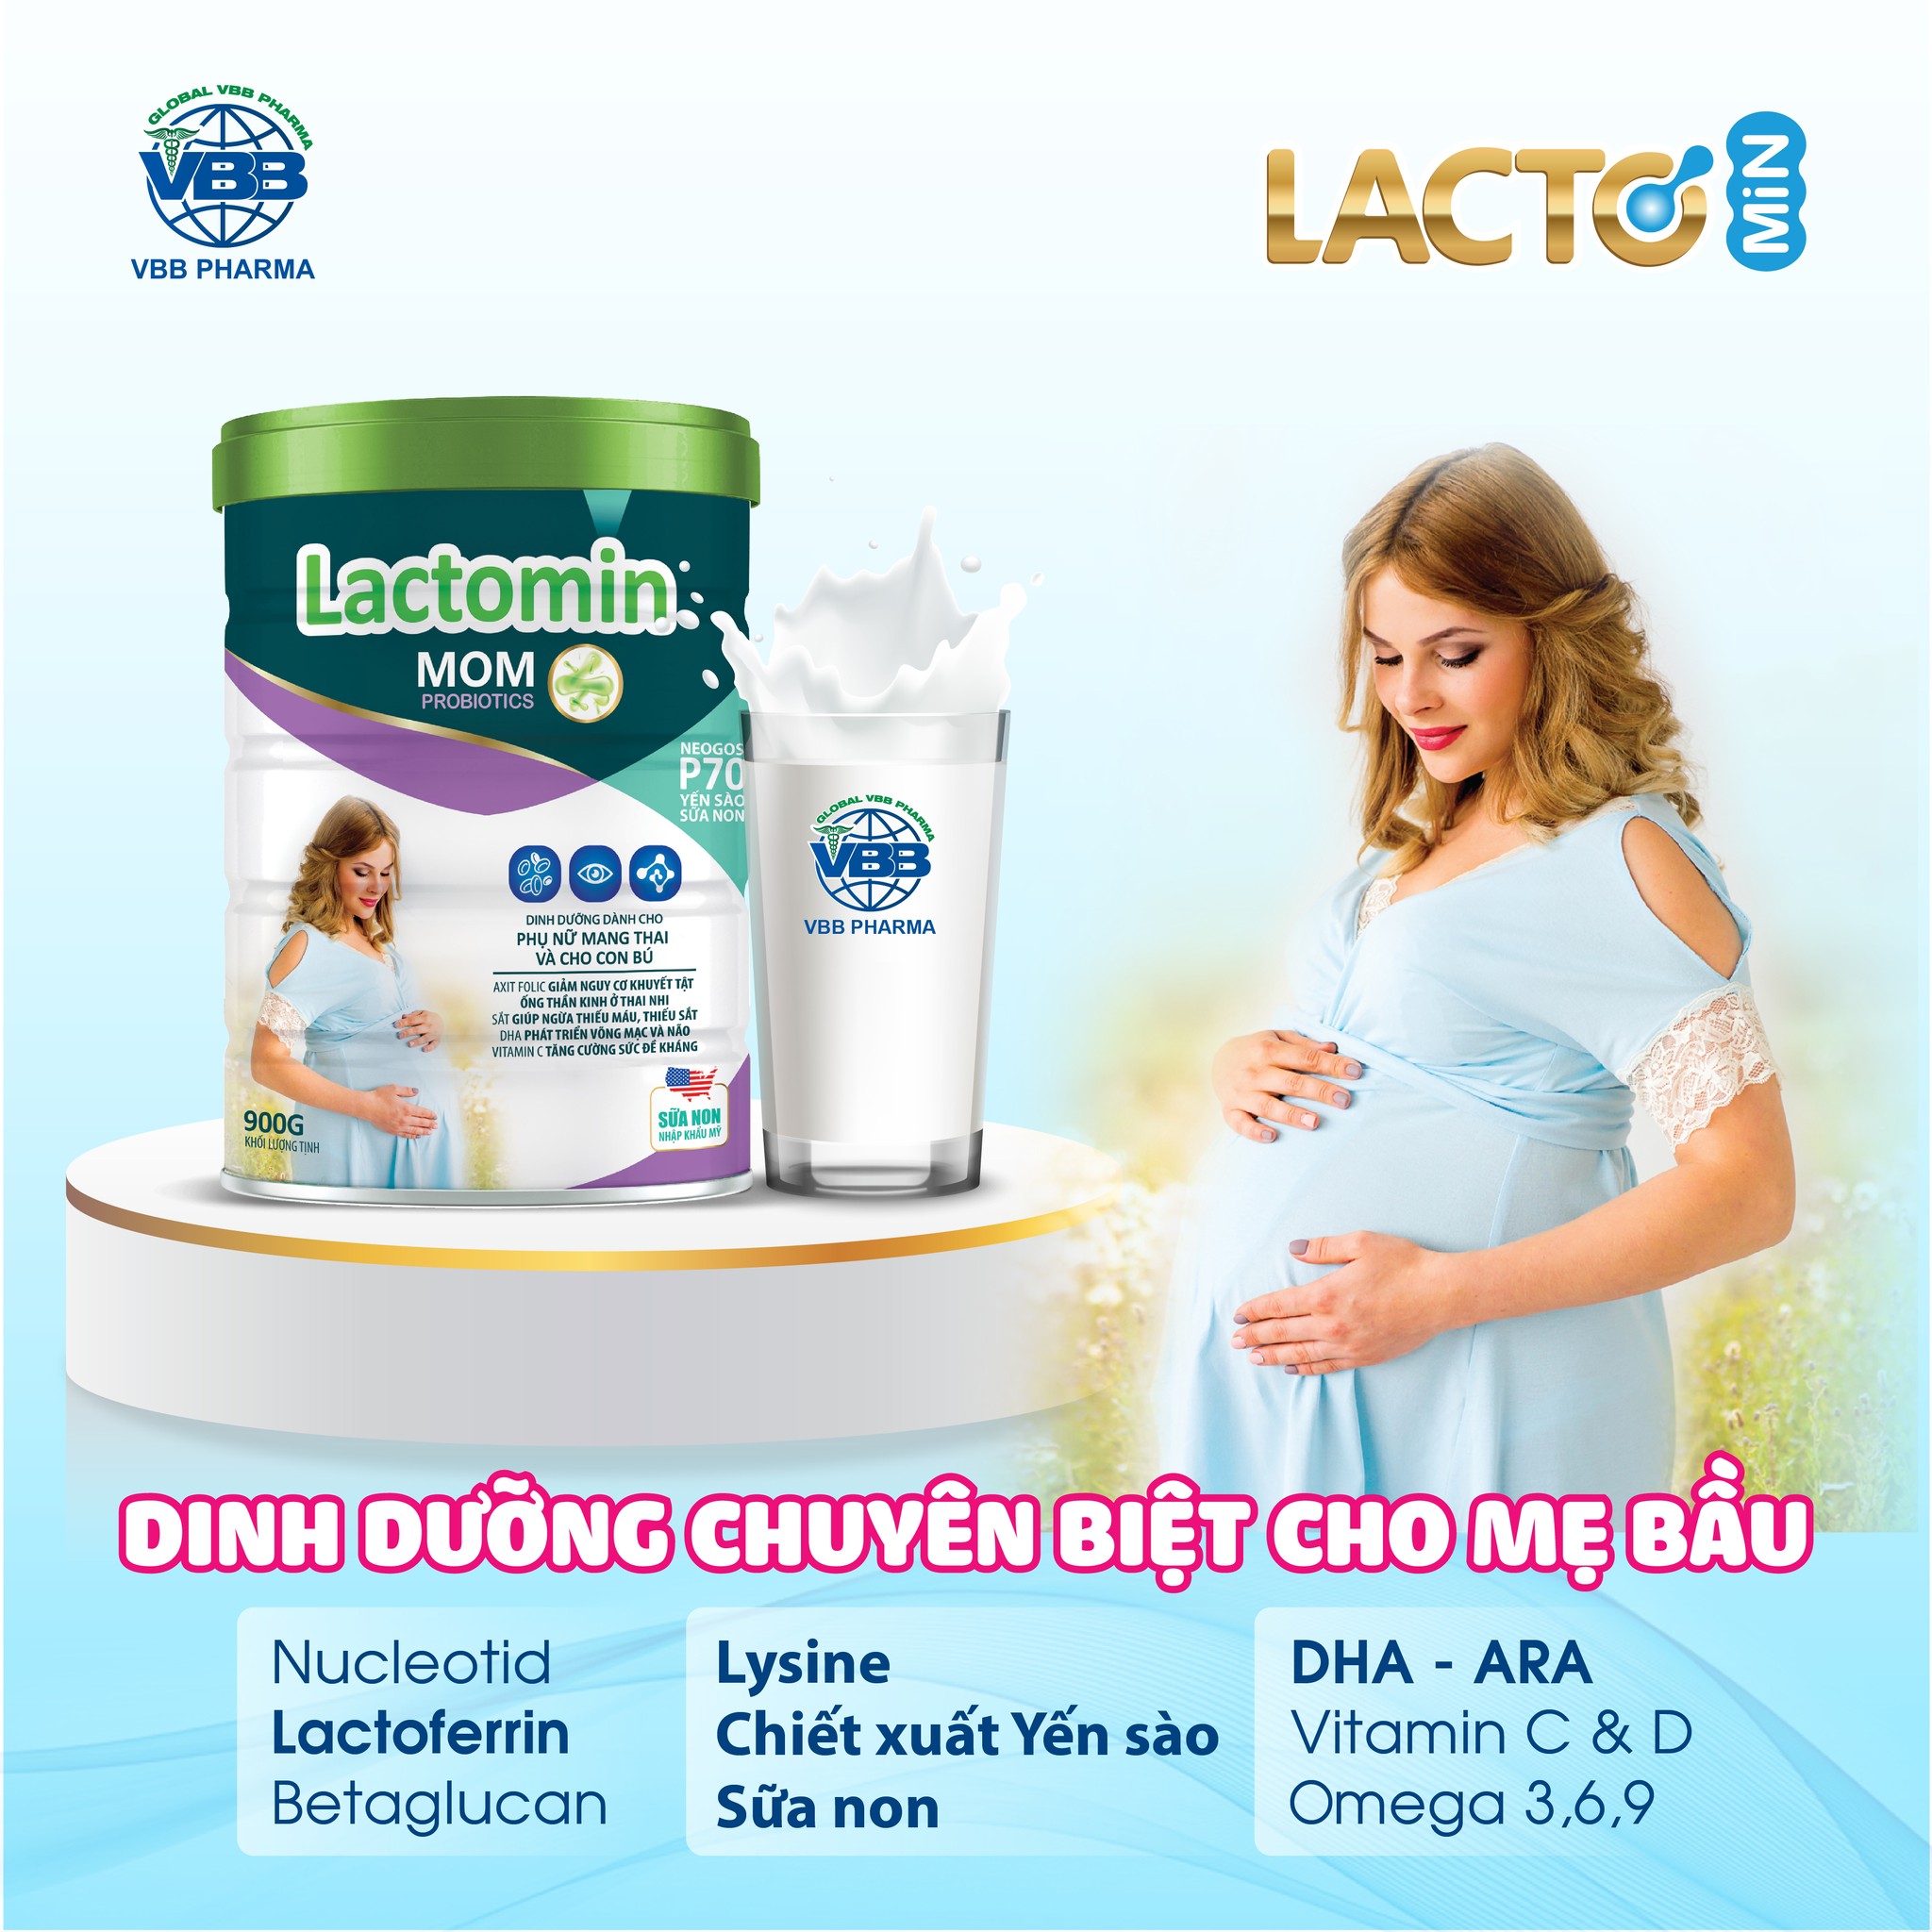 Sữa mát Lactomin Mom 900g- Hấp thụ, Tiêu hóa, dễ uống